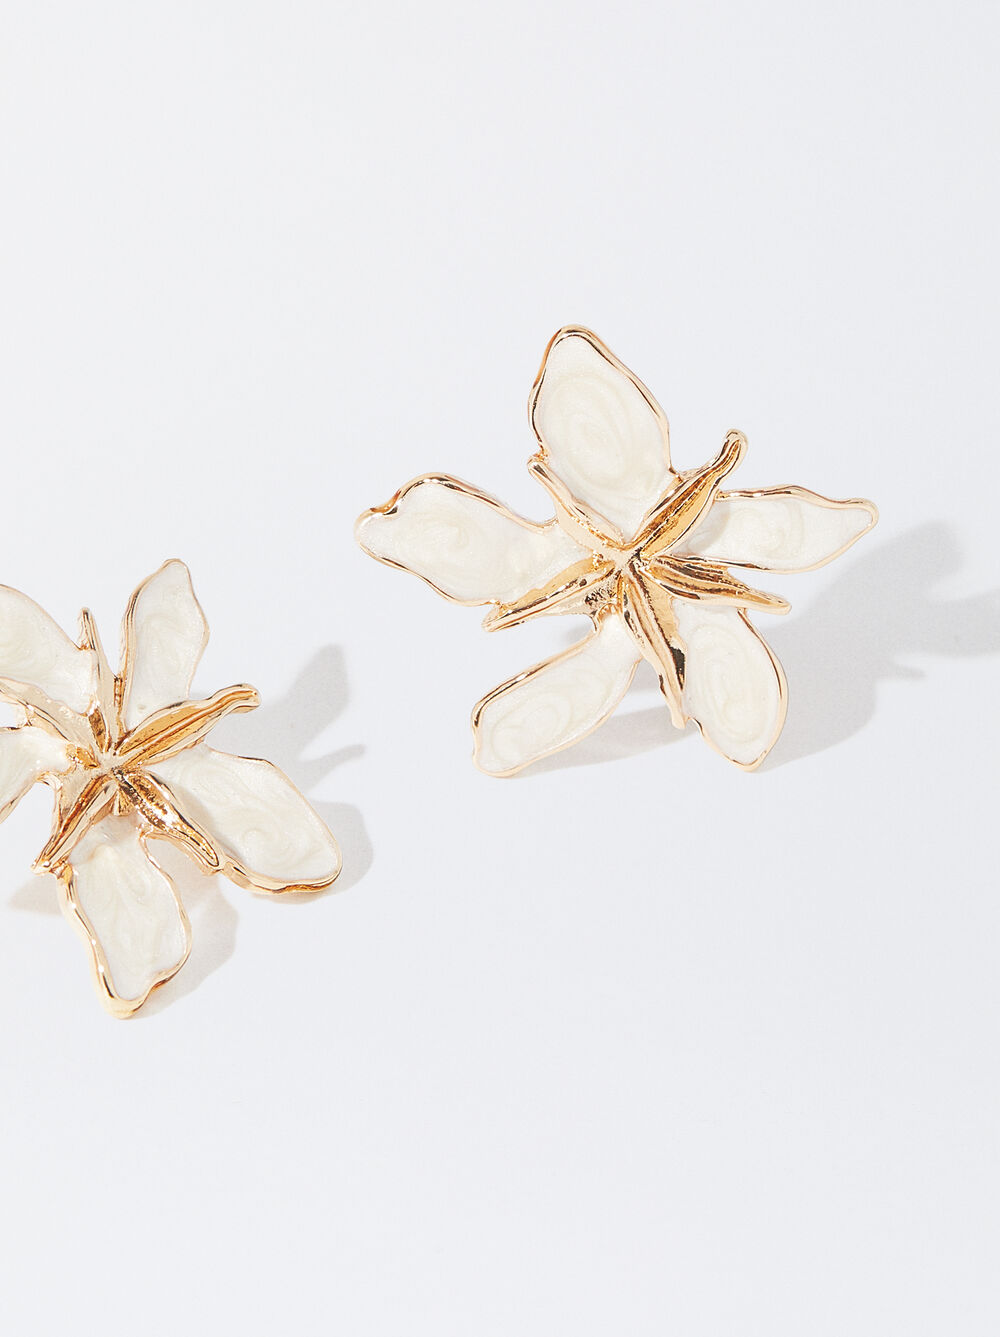 Enamel Flower Earrings